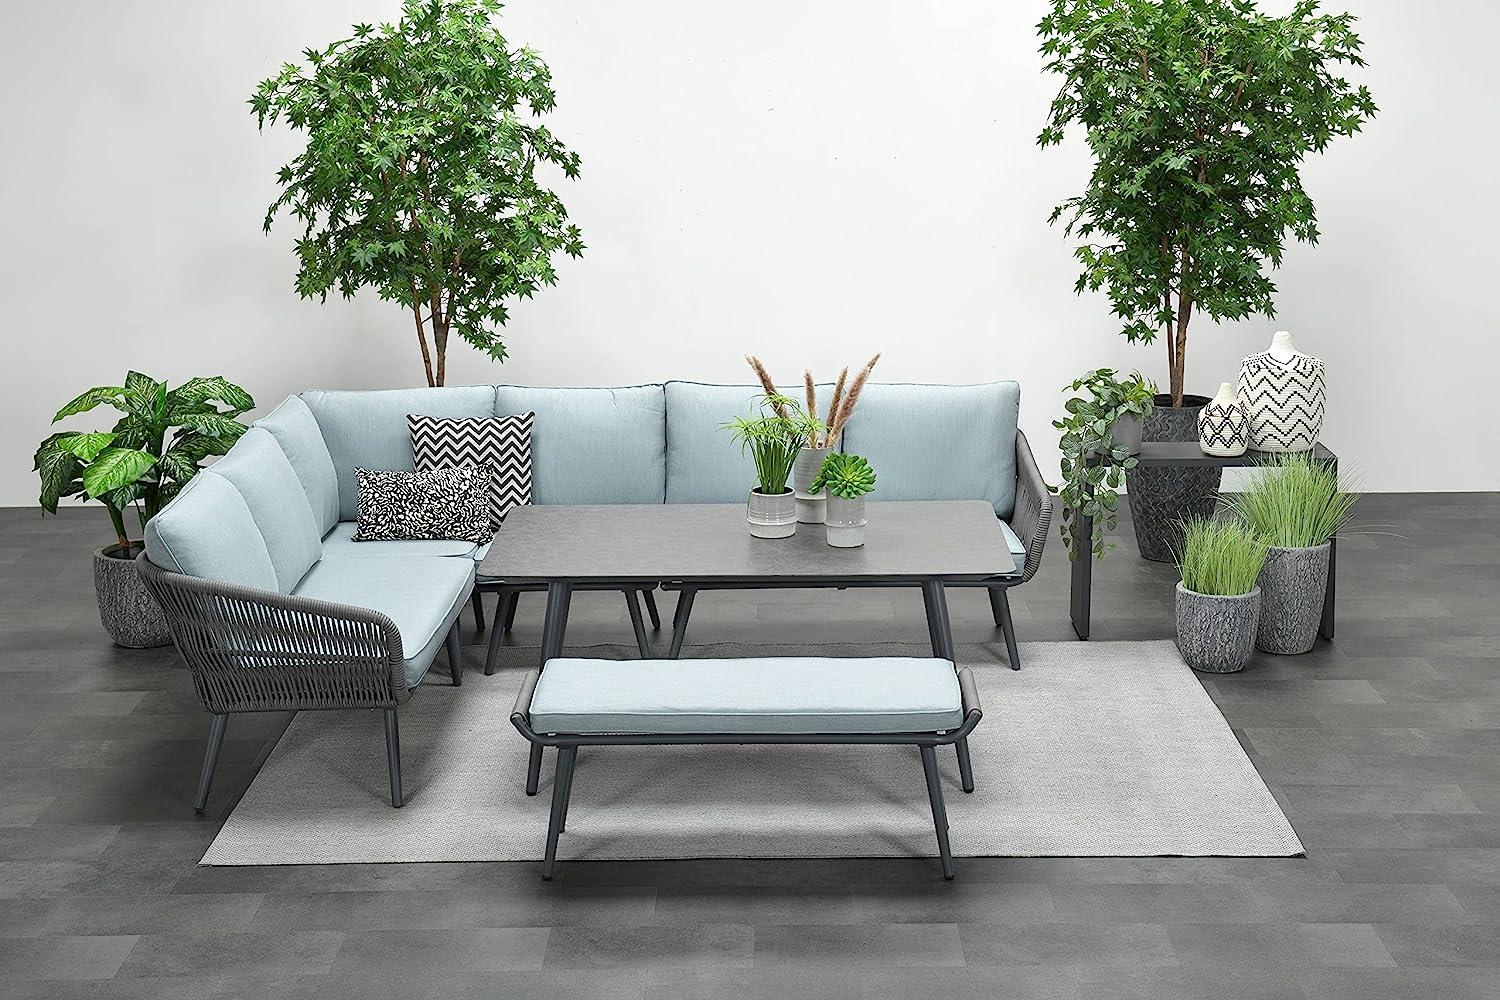 Garden Impressions Exklusives Aluminium-Rope-Lounge Set "Miriam" inkl. Tisch, Bank und Kissen, grau, hellblau,links Bild 1